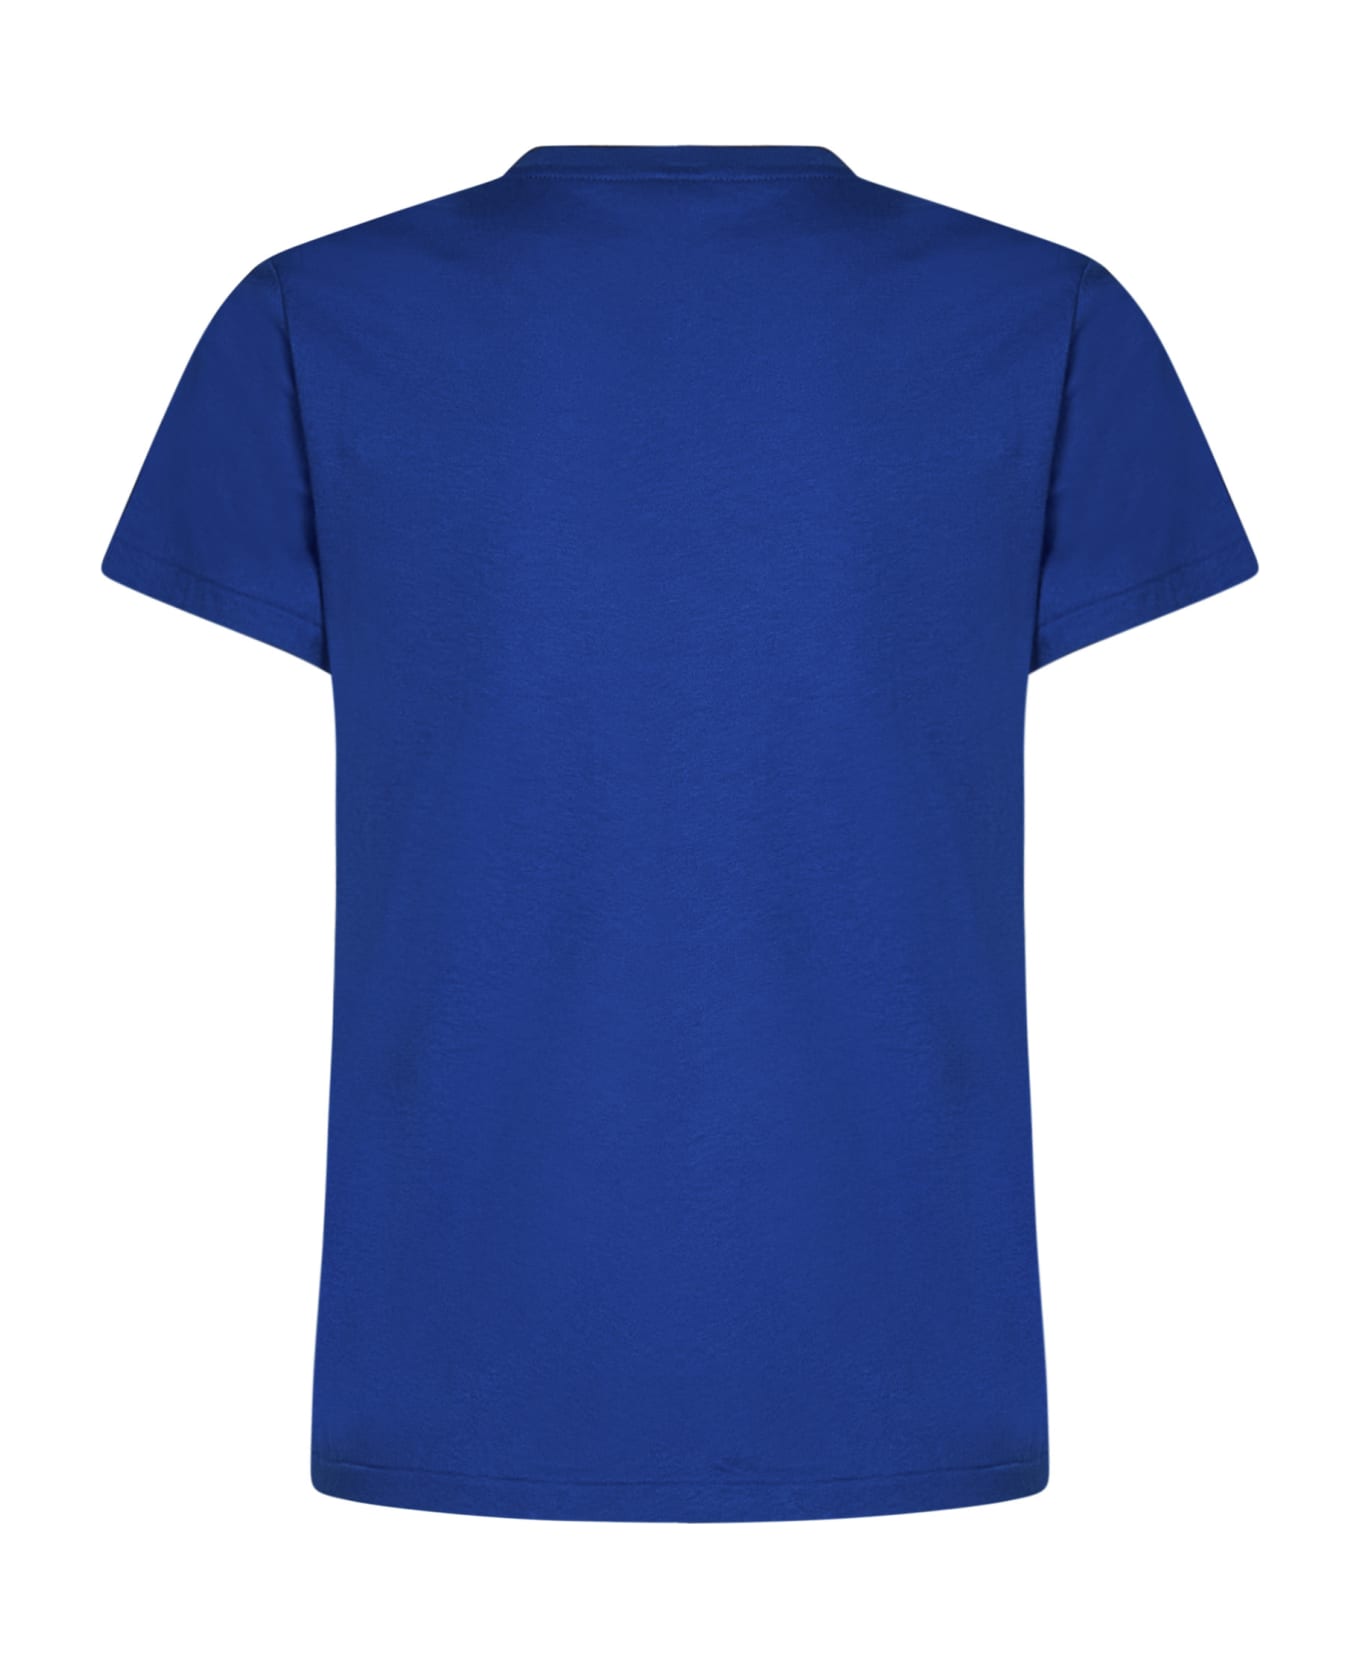 Polo Ralph Lauren T-shirt Polo Ralph Lauren - Blue